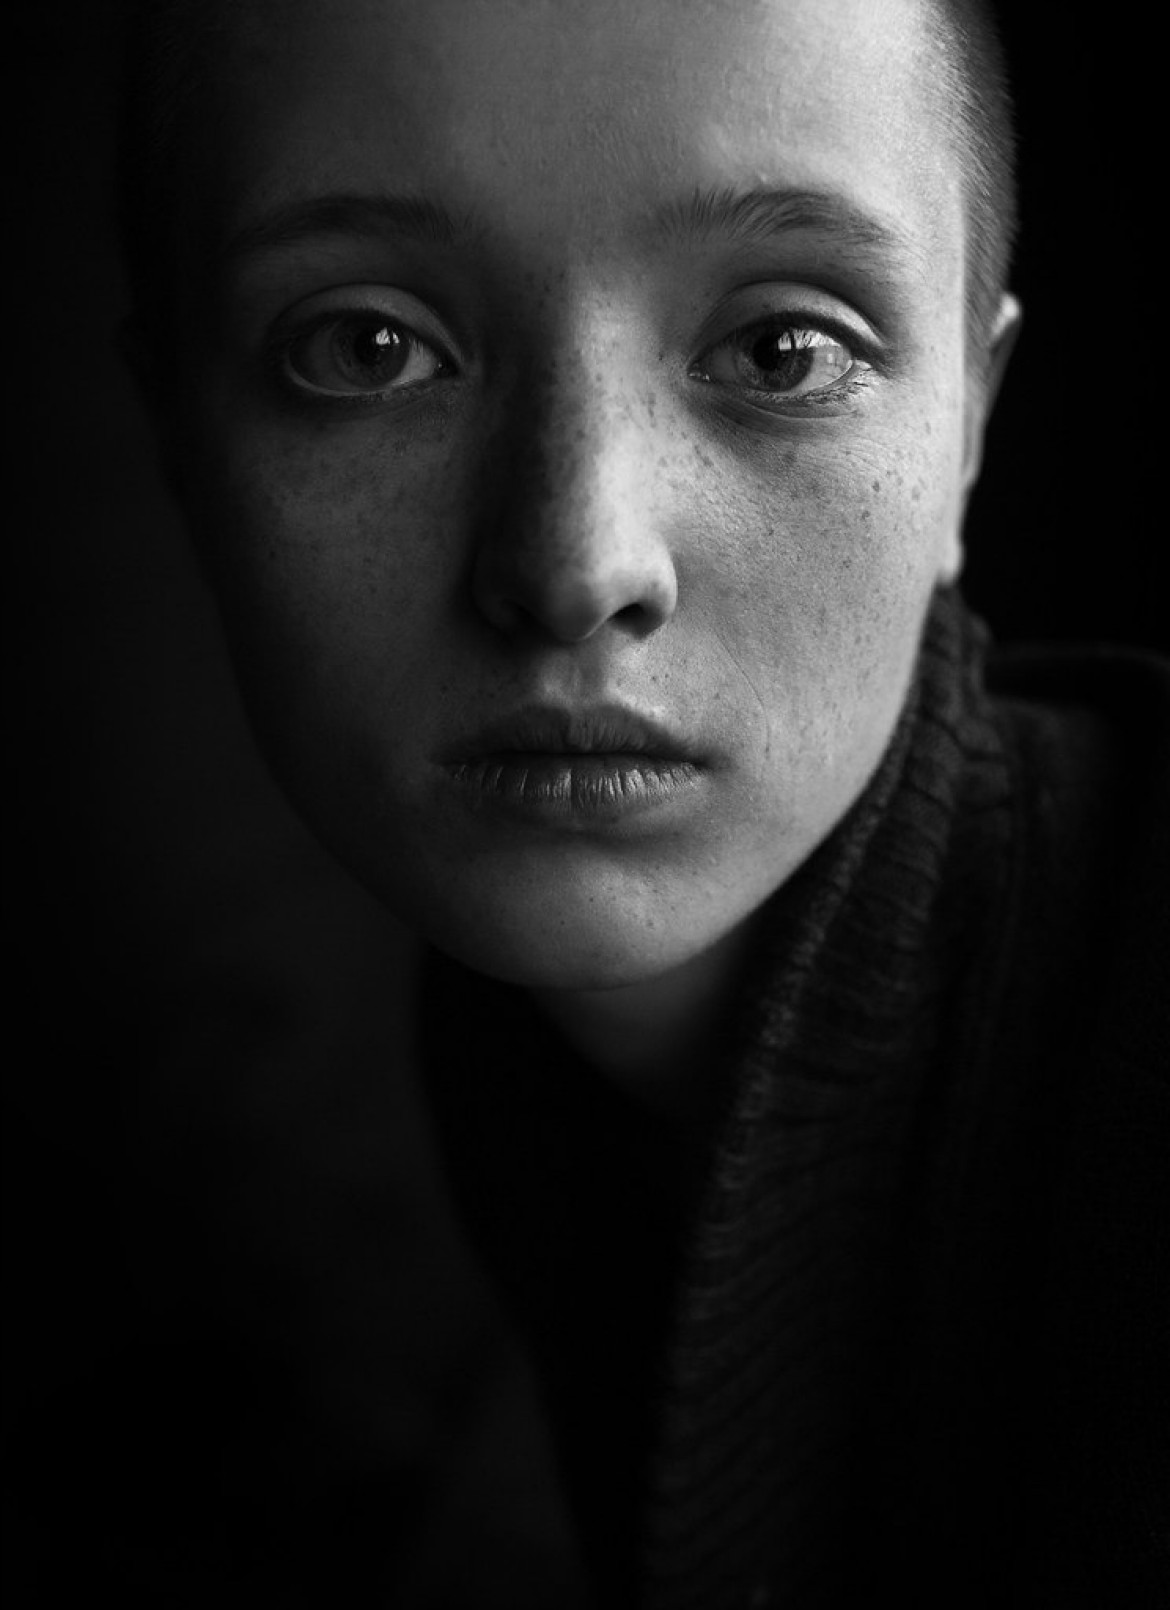 fot. Artem Mikryukov, Rosja. 2. miejsce w kategorii Portret